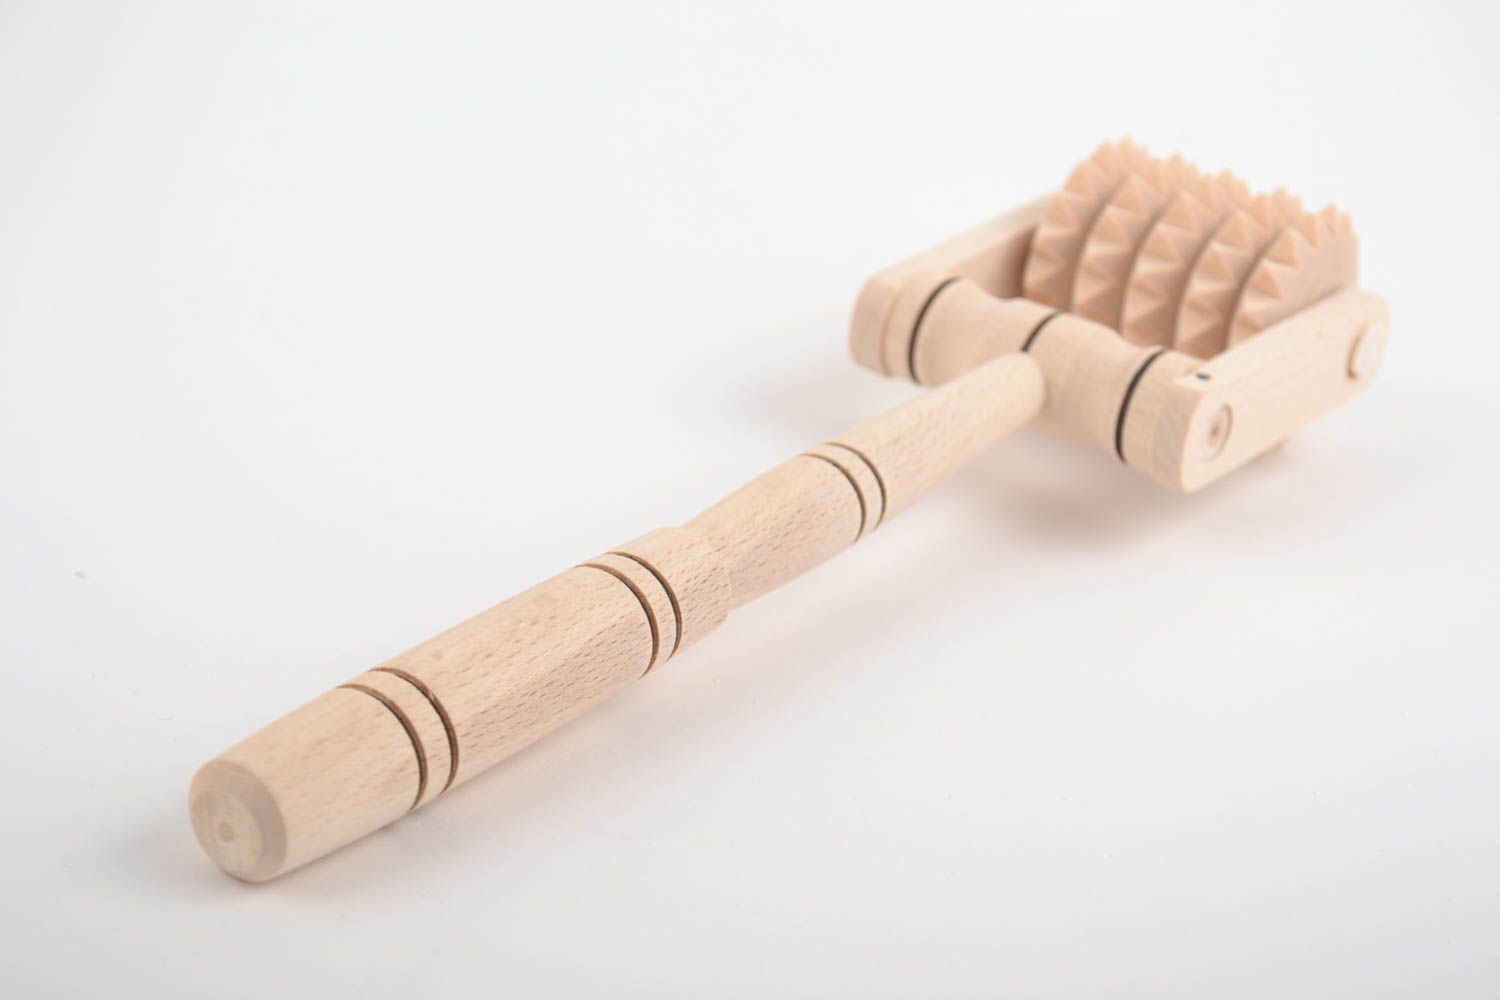 Masajeador de madera para pies y espalda artesanal con manga mediana ccasero foto 5